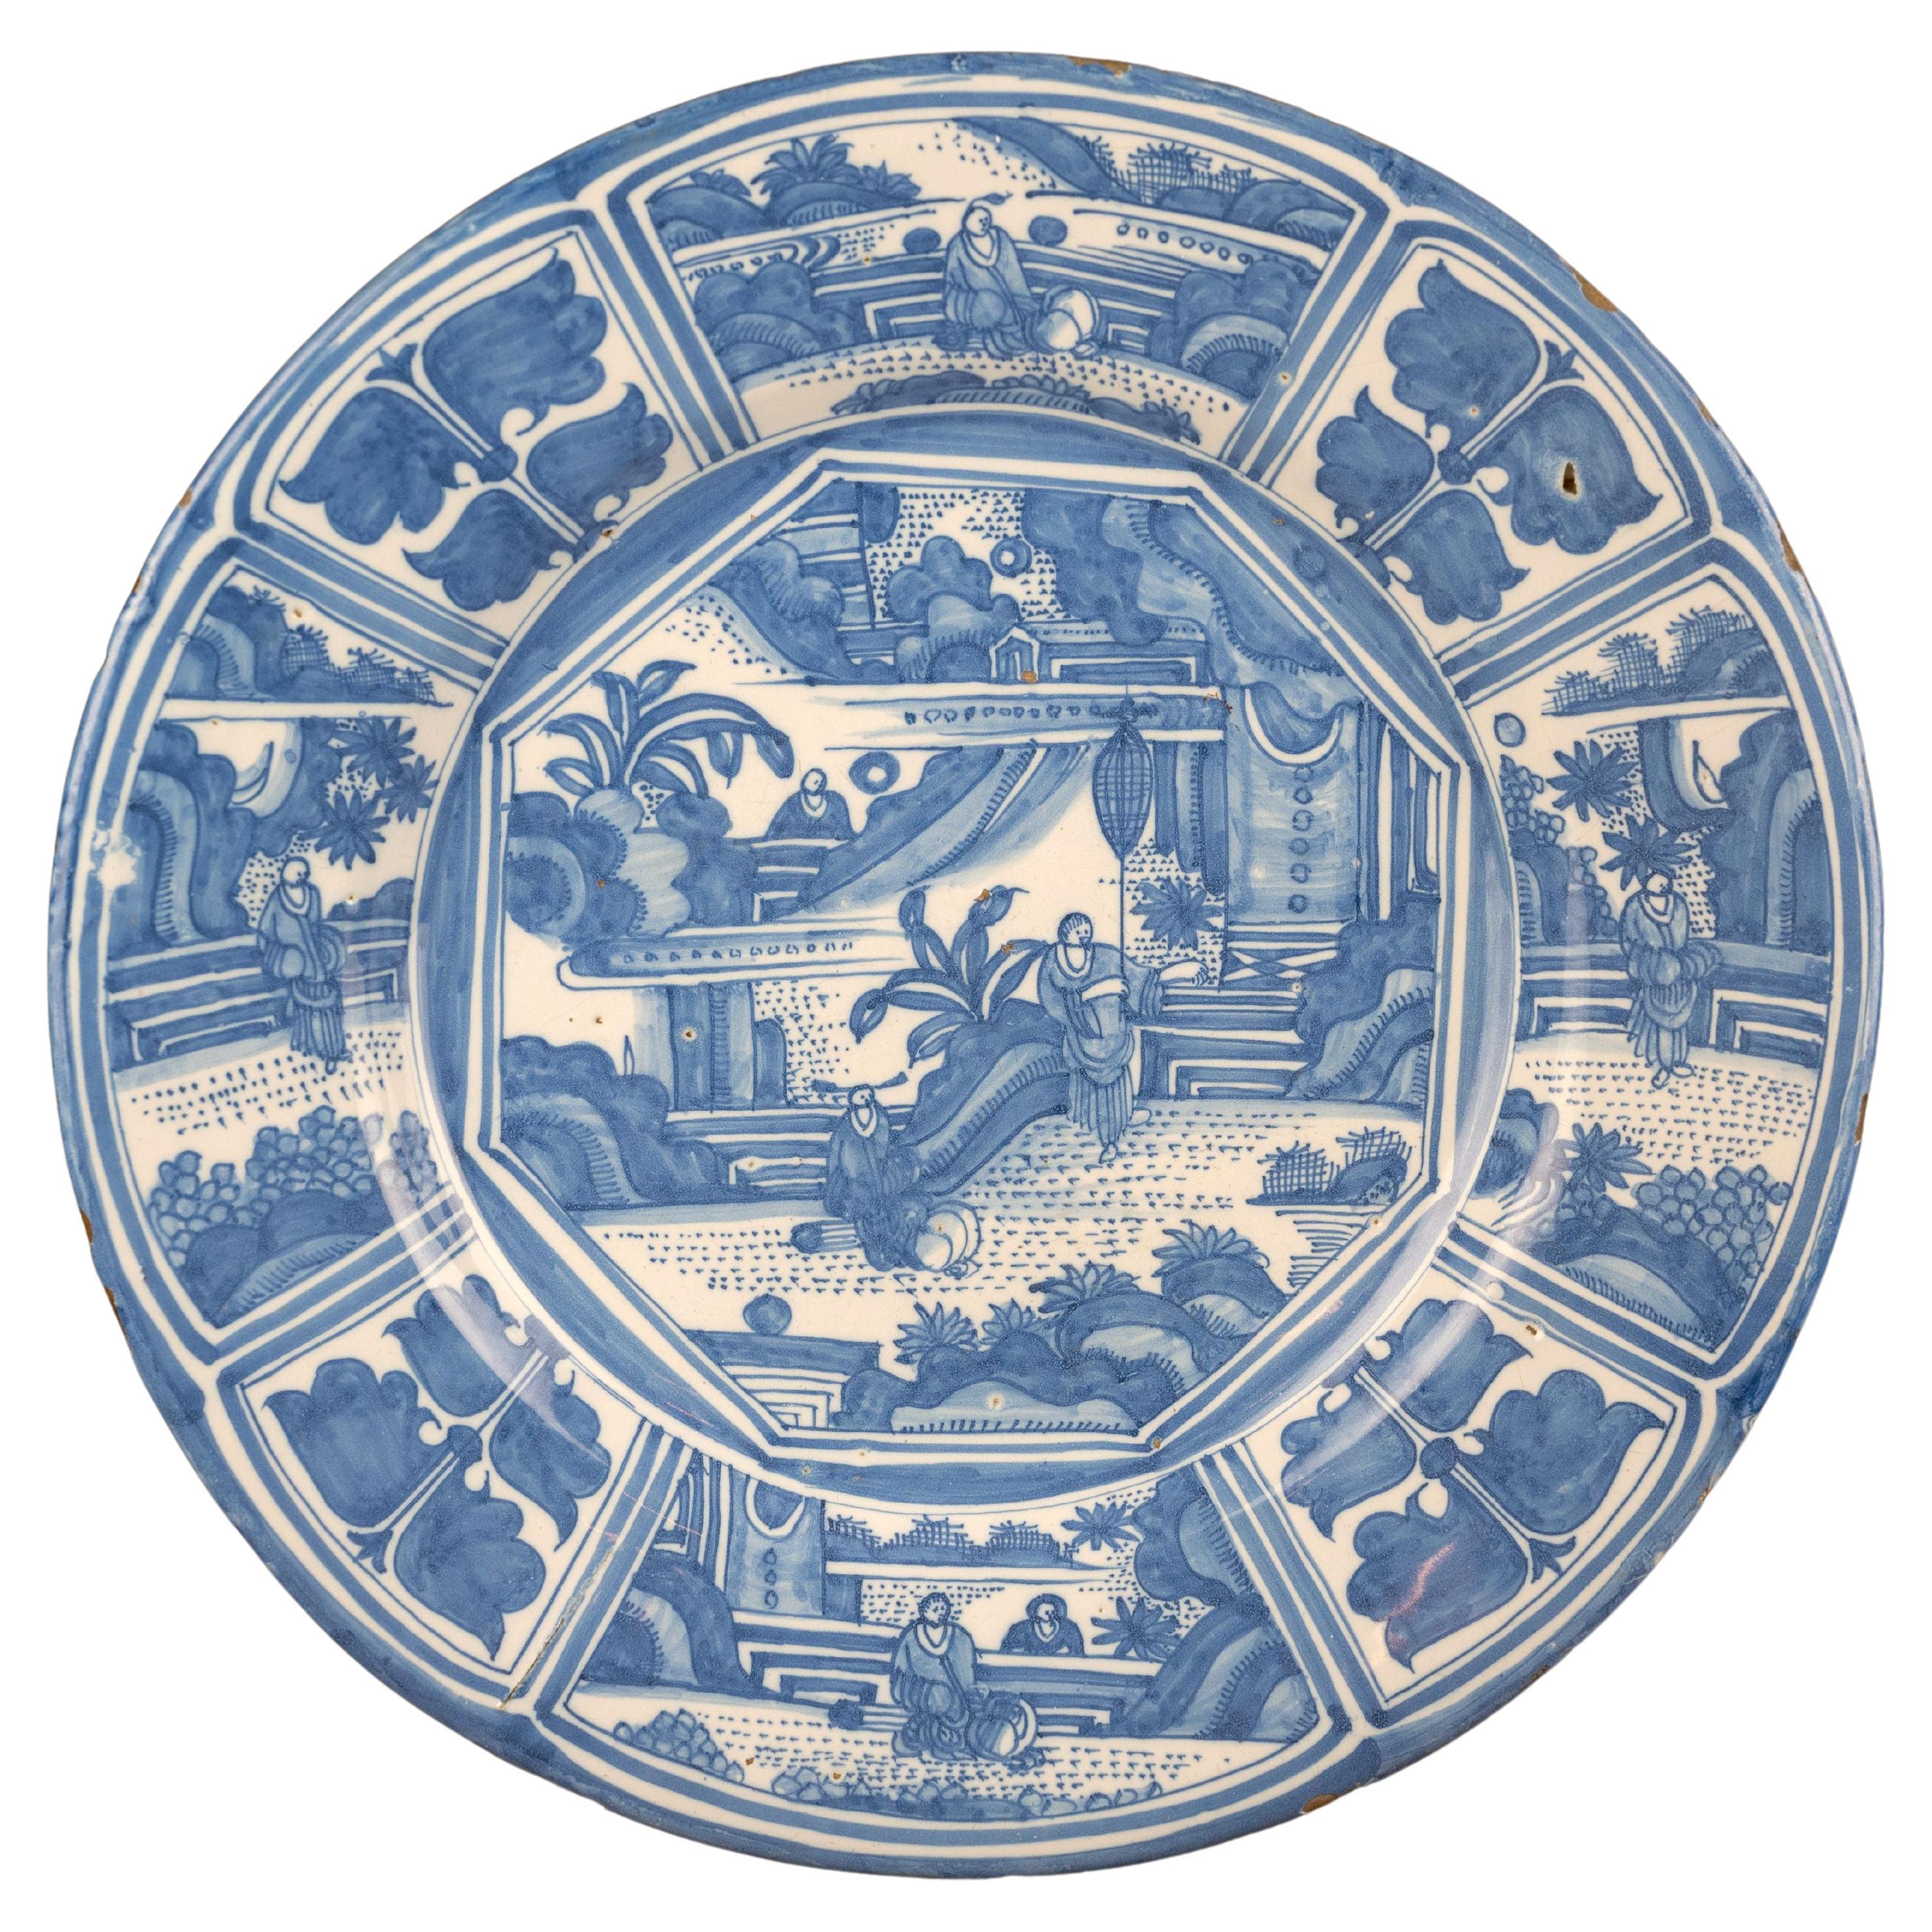 Große blau-weiße Chinoiserie-Schale aus Delfter Porzellan, um 1670, chinesische Figuren